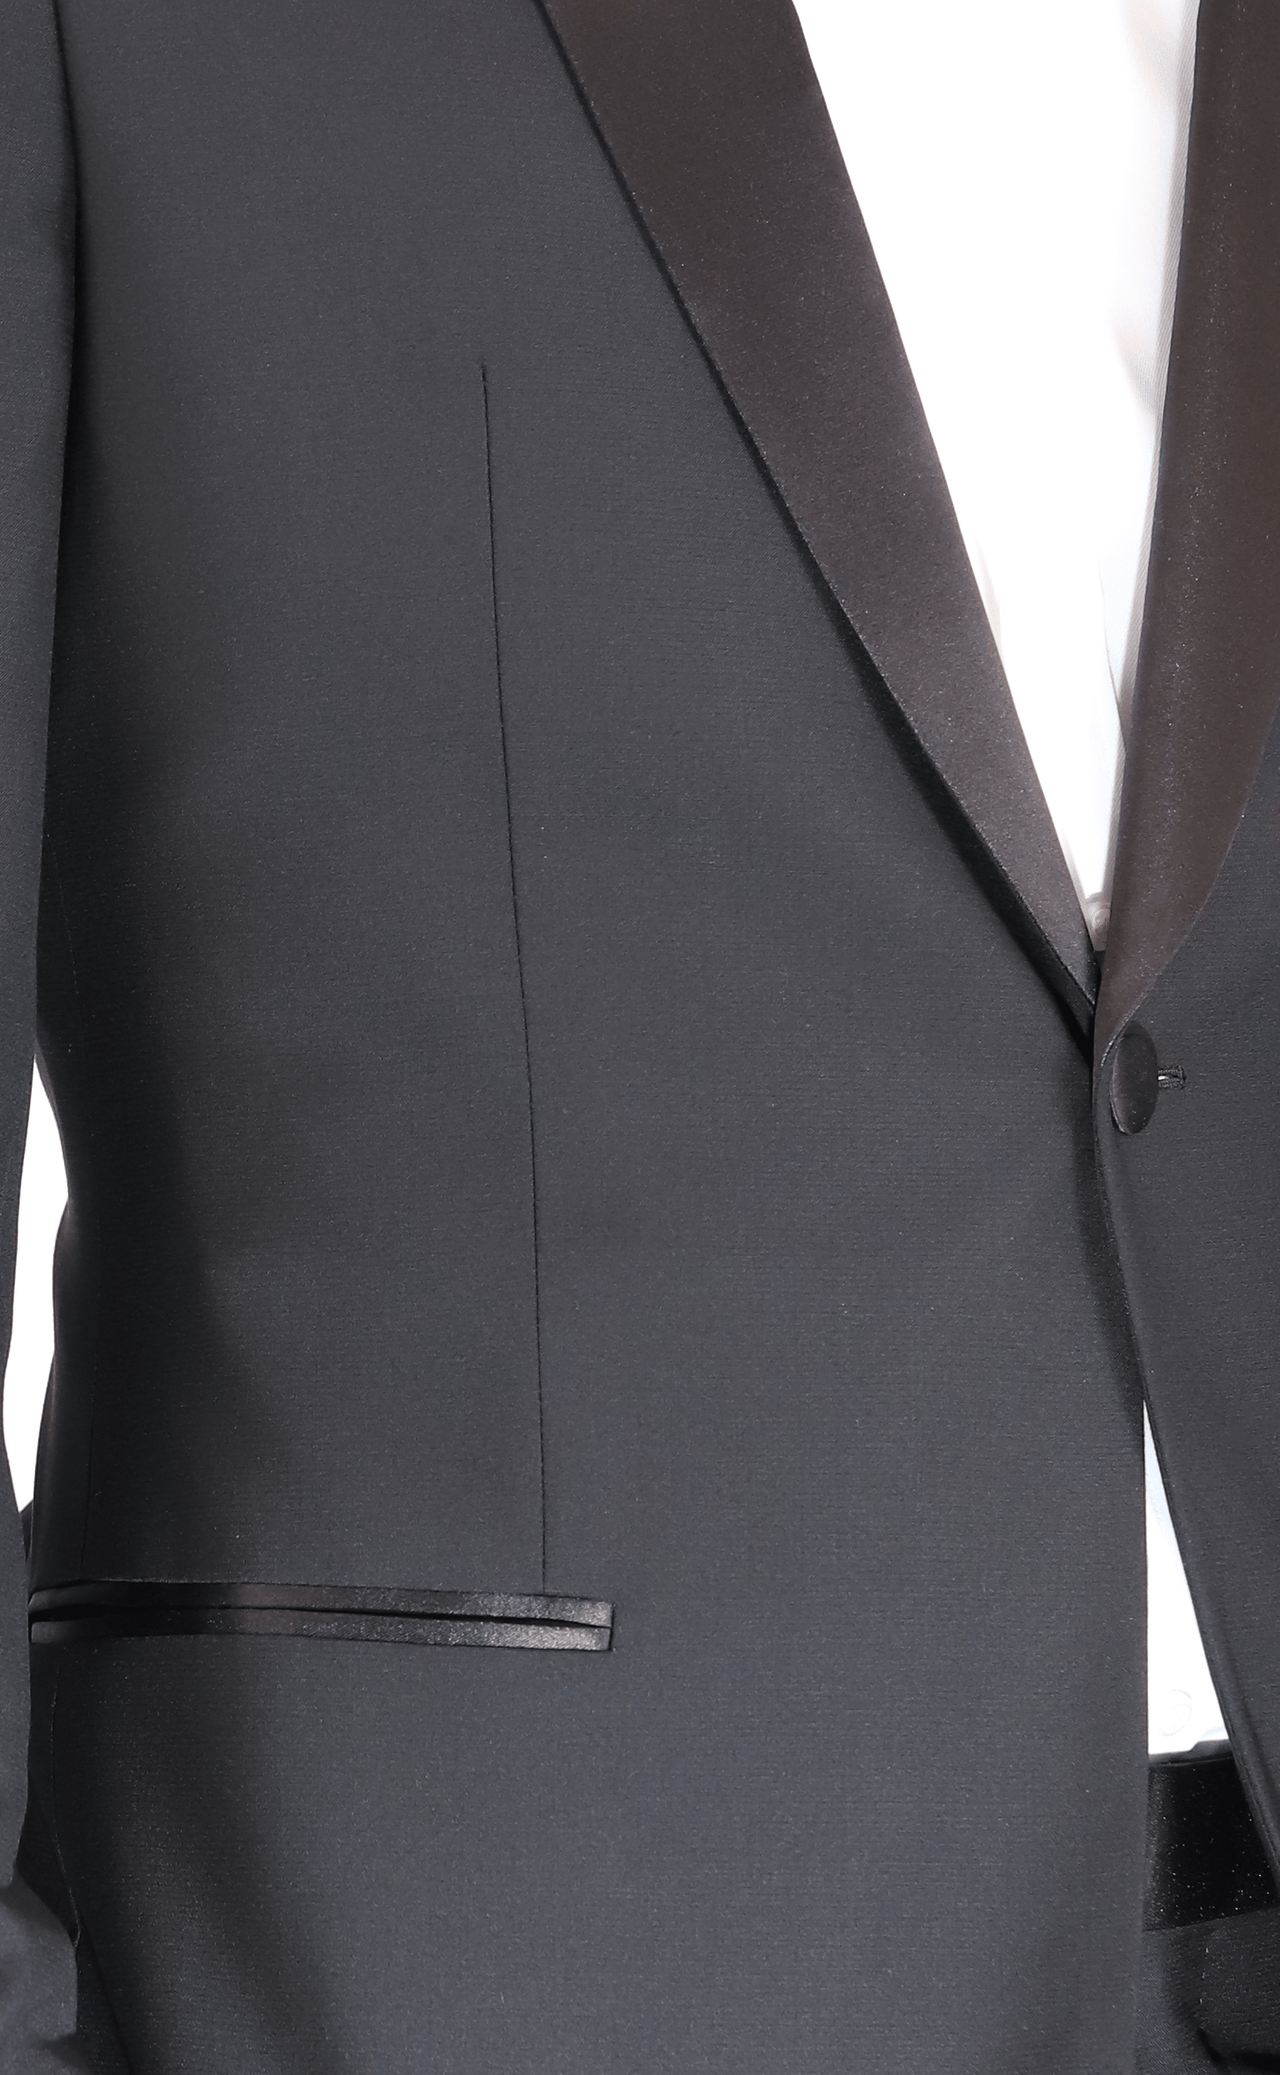 Blujacket SUITS Blujacket Men's Black Italian Wool Canvassed Regular Fit Shawl Lapel Tuxedo Suit